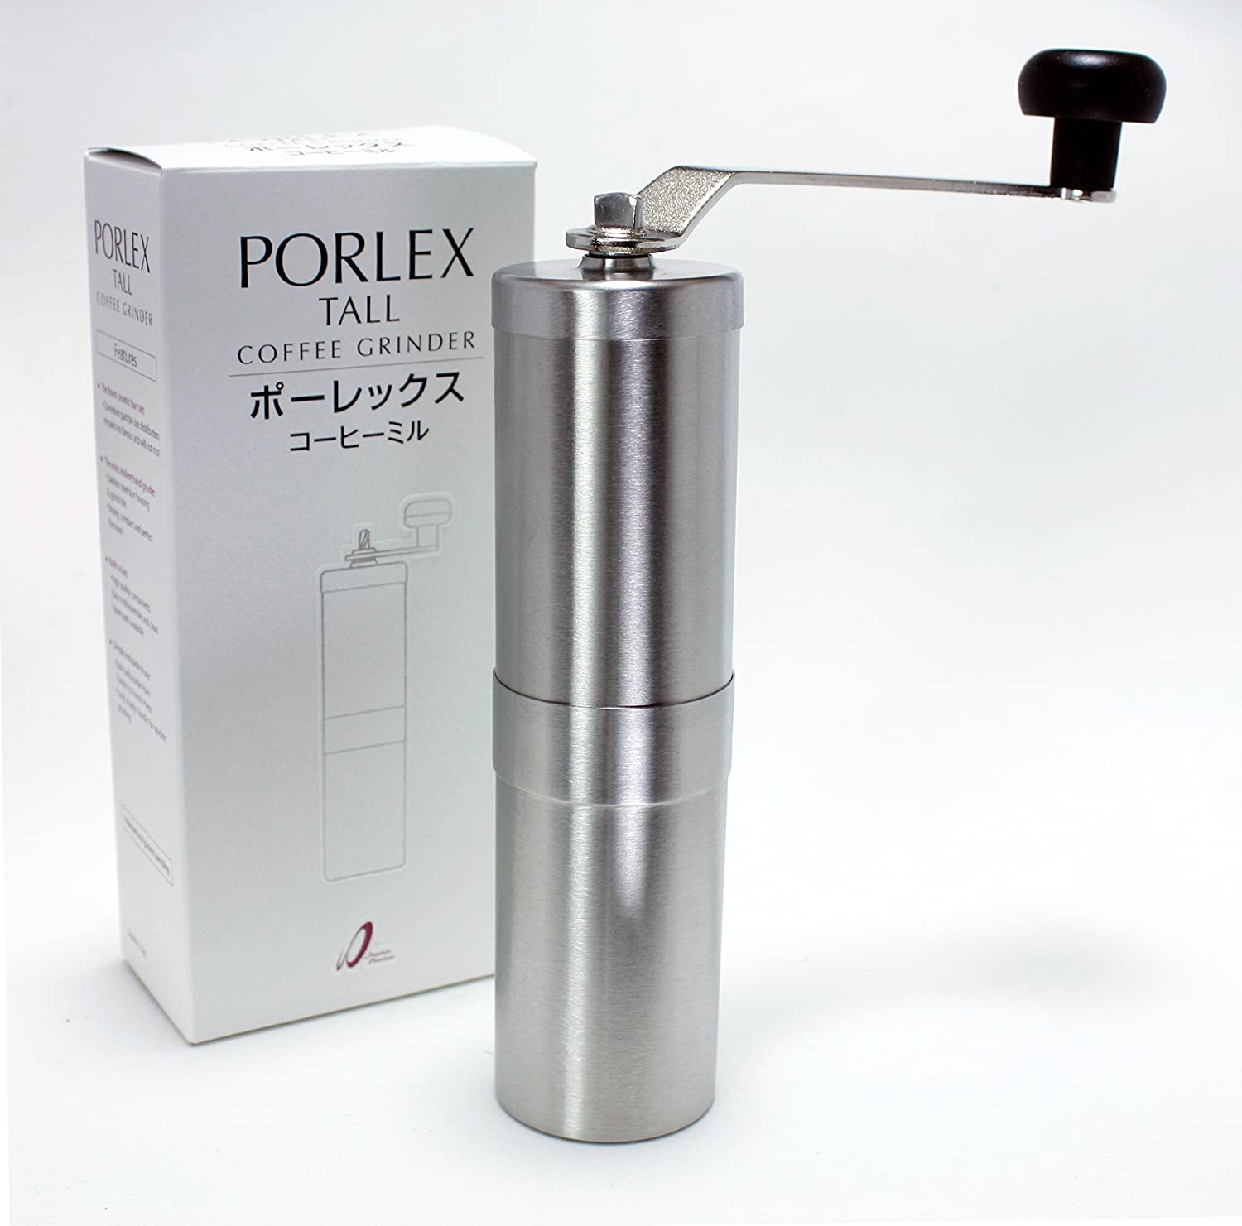 PORLEX(ポーレックス) コーヒーミルの商品画像サムネ4 